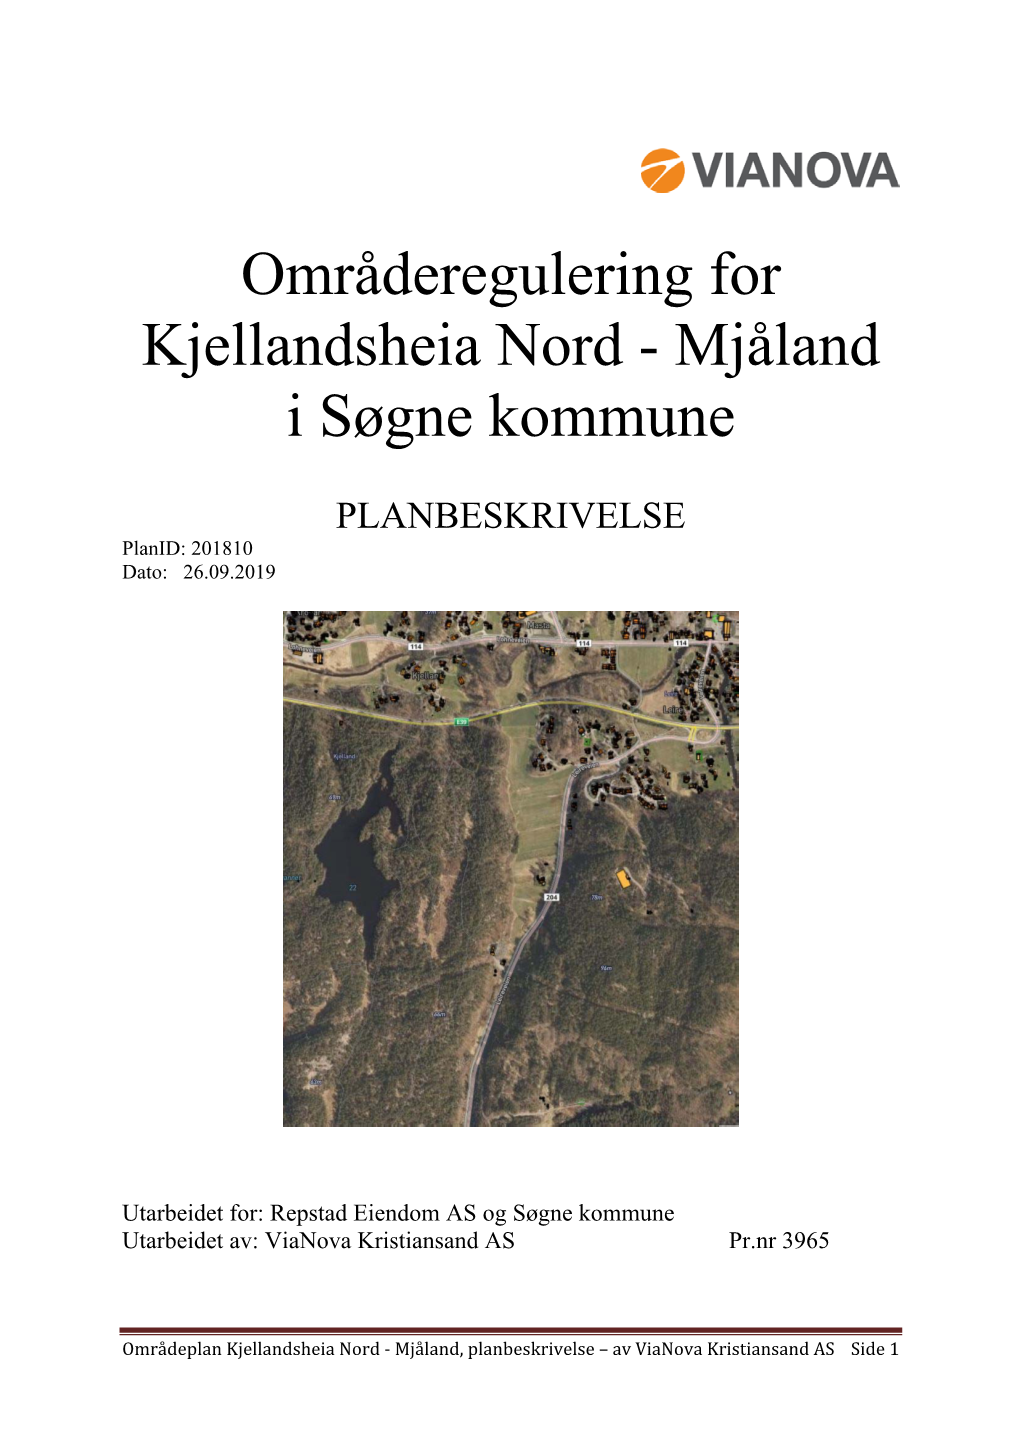 Områderegulering for Kjellandsheia Nord - Mjåland I Søgne Kommune